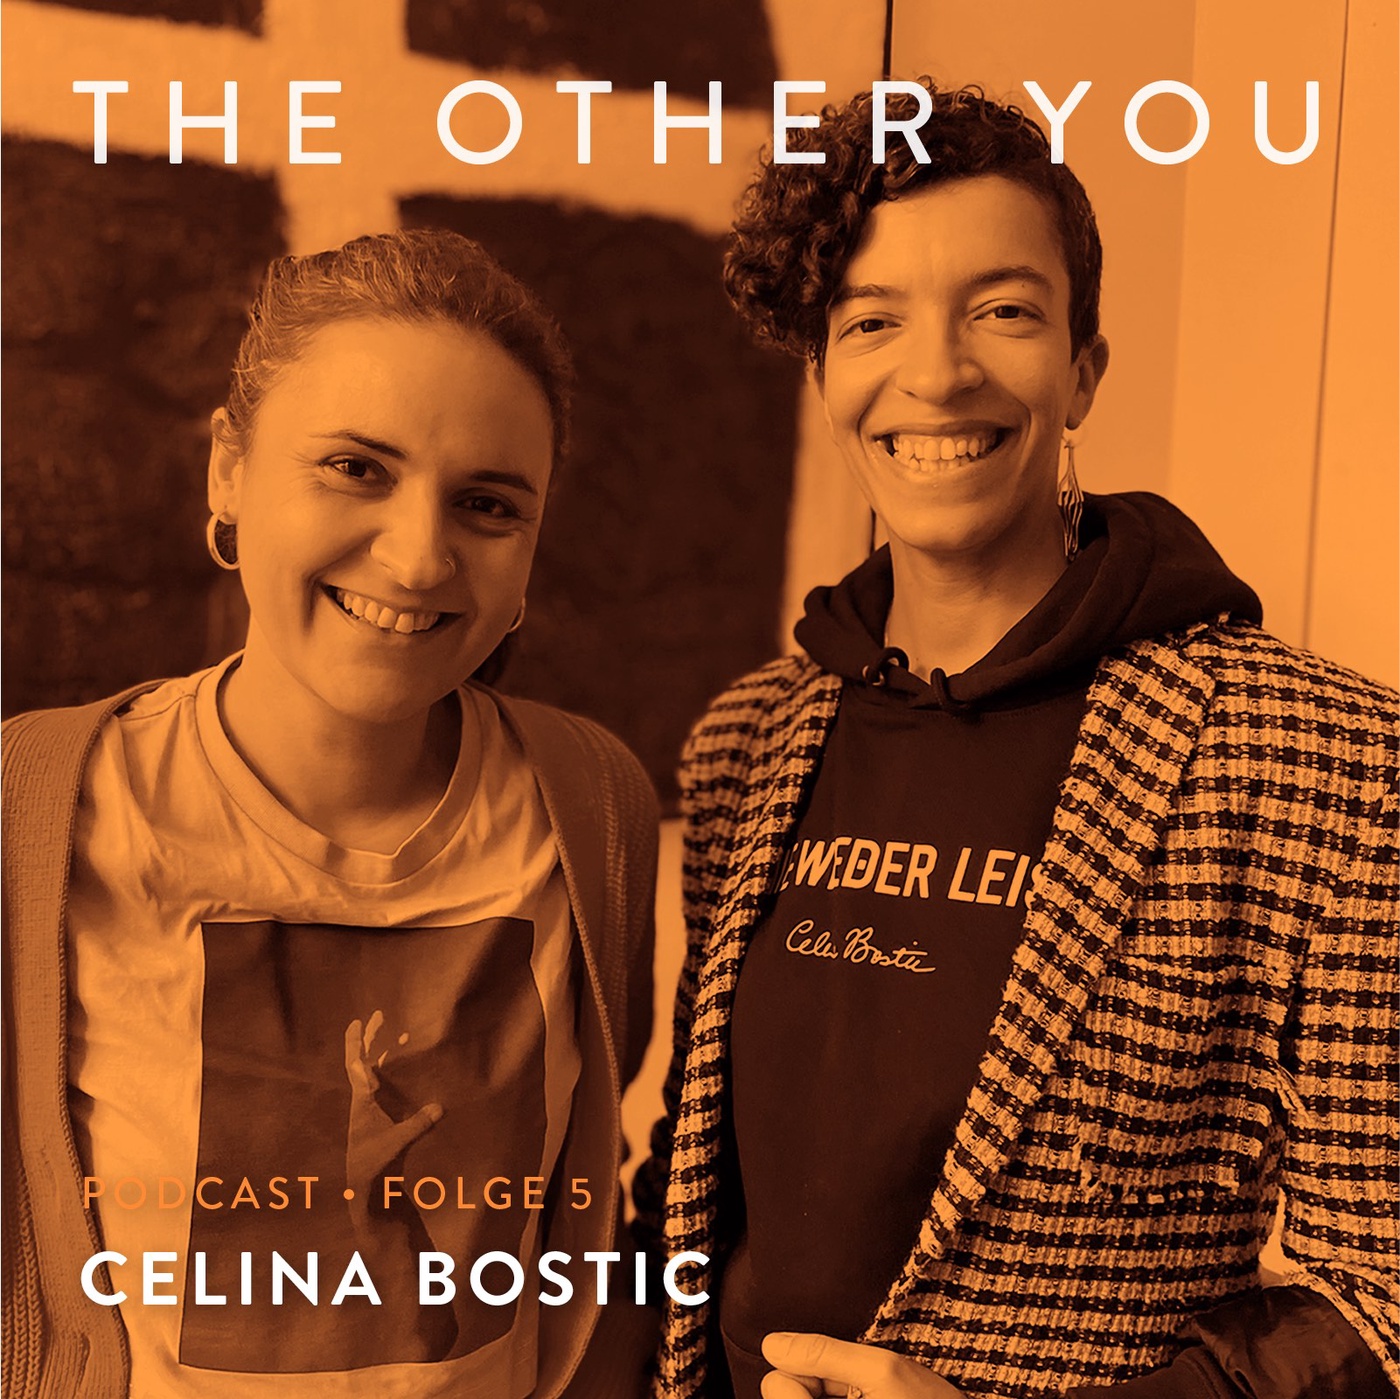 Celina Bostic über den Mut, sich neu zu erfinden und »Nie wieder leise« zu sein